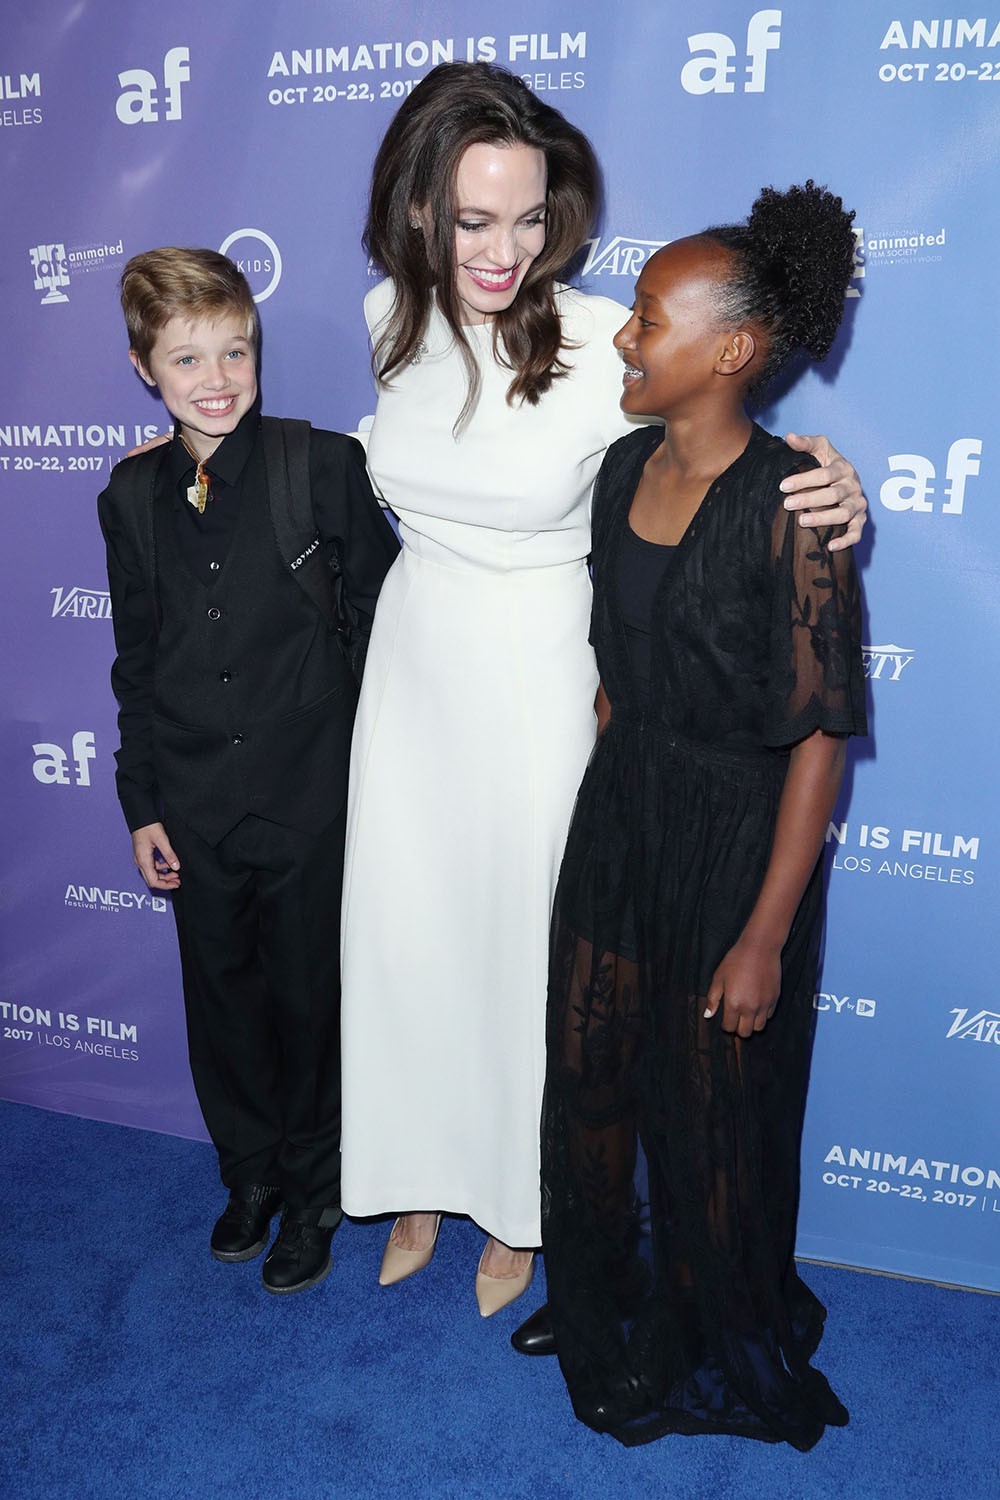 Chỉ muốn làm một người mẹ tốt, Angelina Jolie buồn vì bị xem như kẻ xấu trong cuộc ly hôn với Brad Pitt - Ảnh 1.